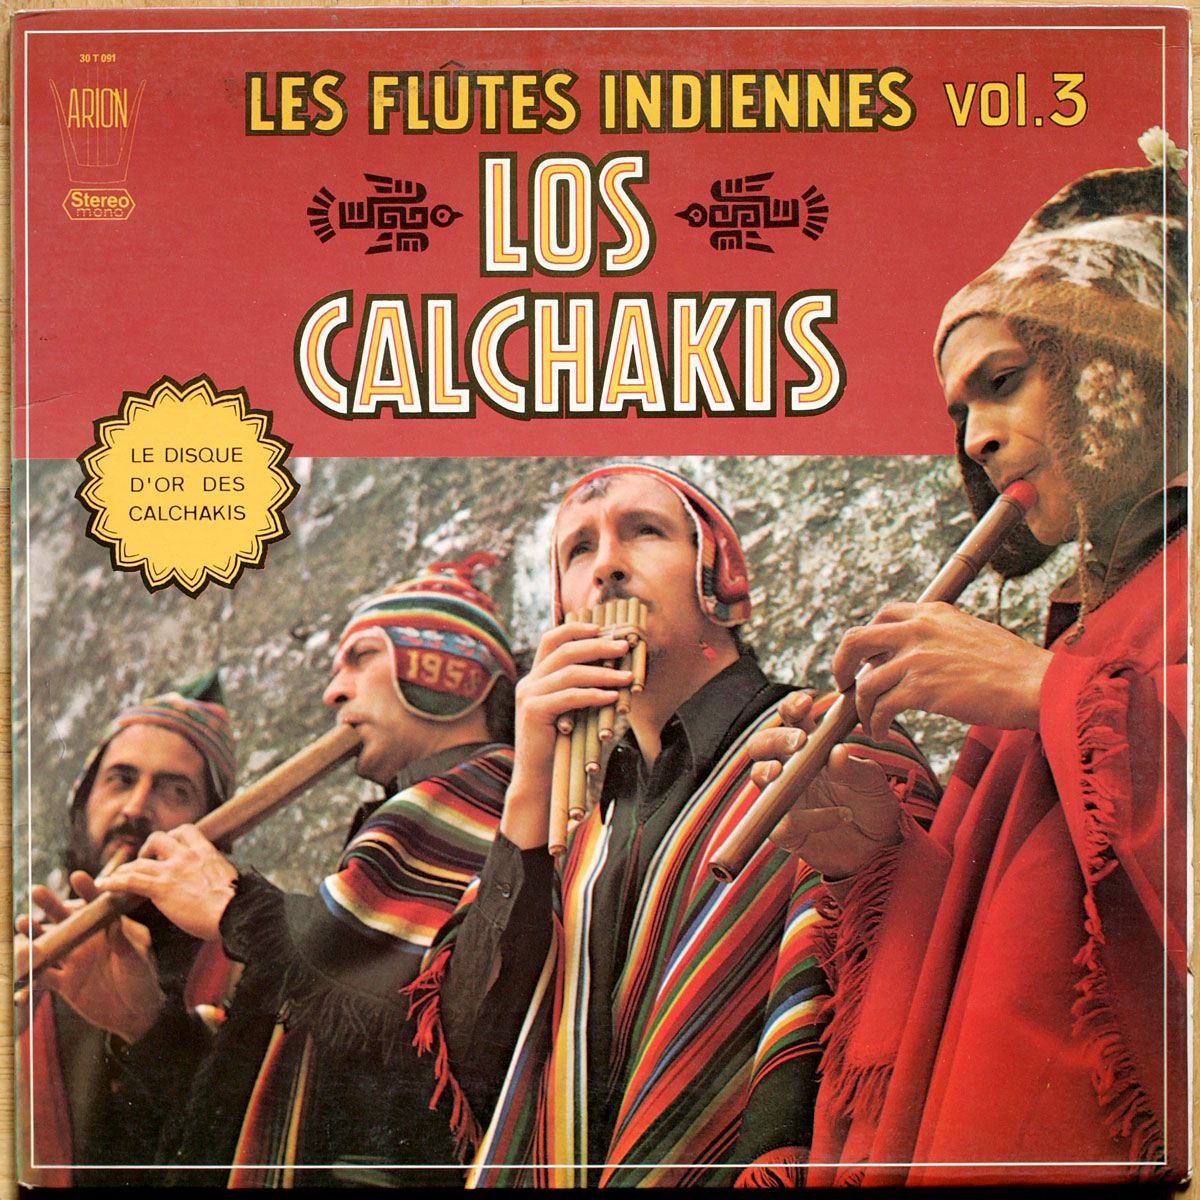 Los Calchakis • Les flûtes indiennes • Volume 3 • Arion 30 T 091